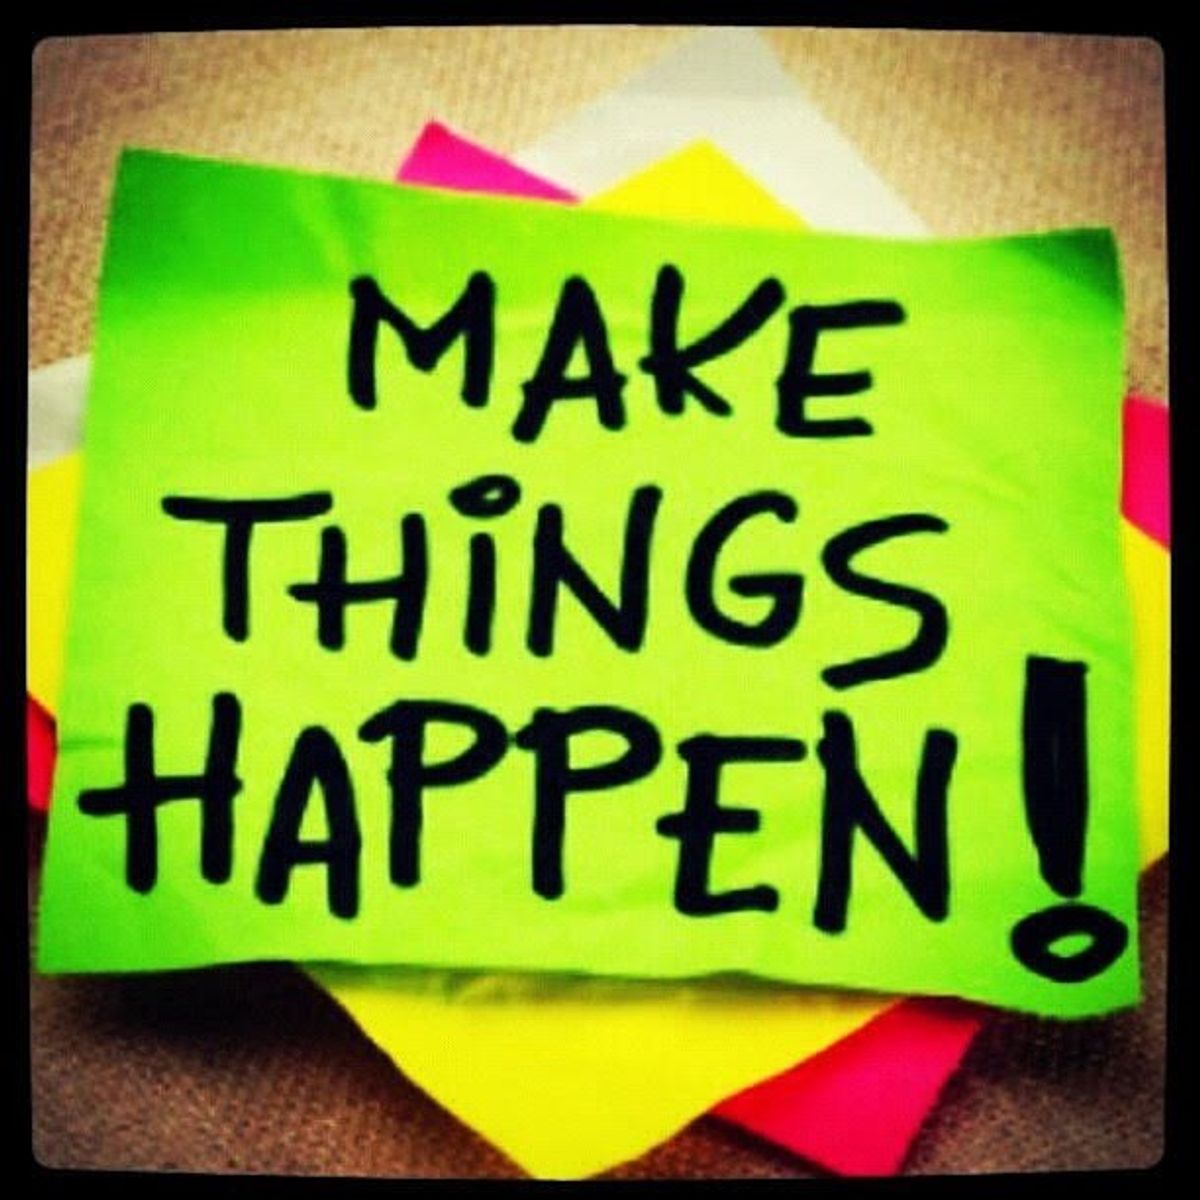 Make things happen. Things happen. Make things happen кепка. Картина с надписью make things happen. Make your happen